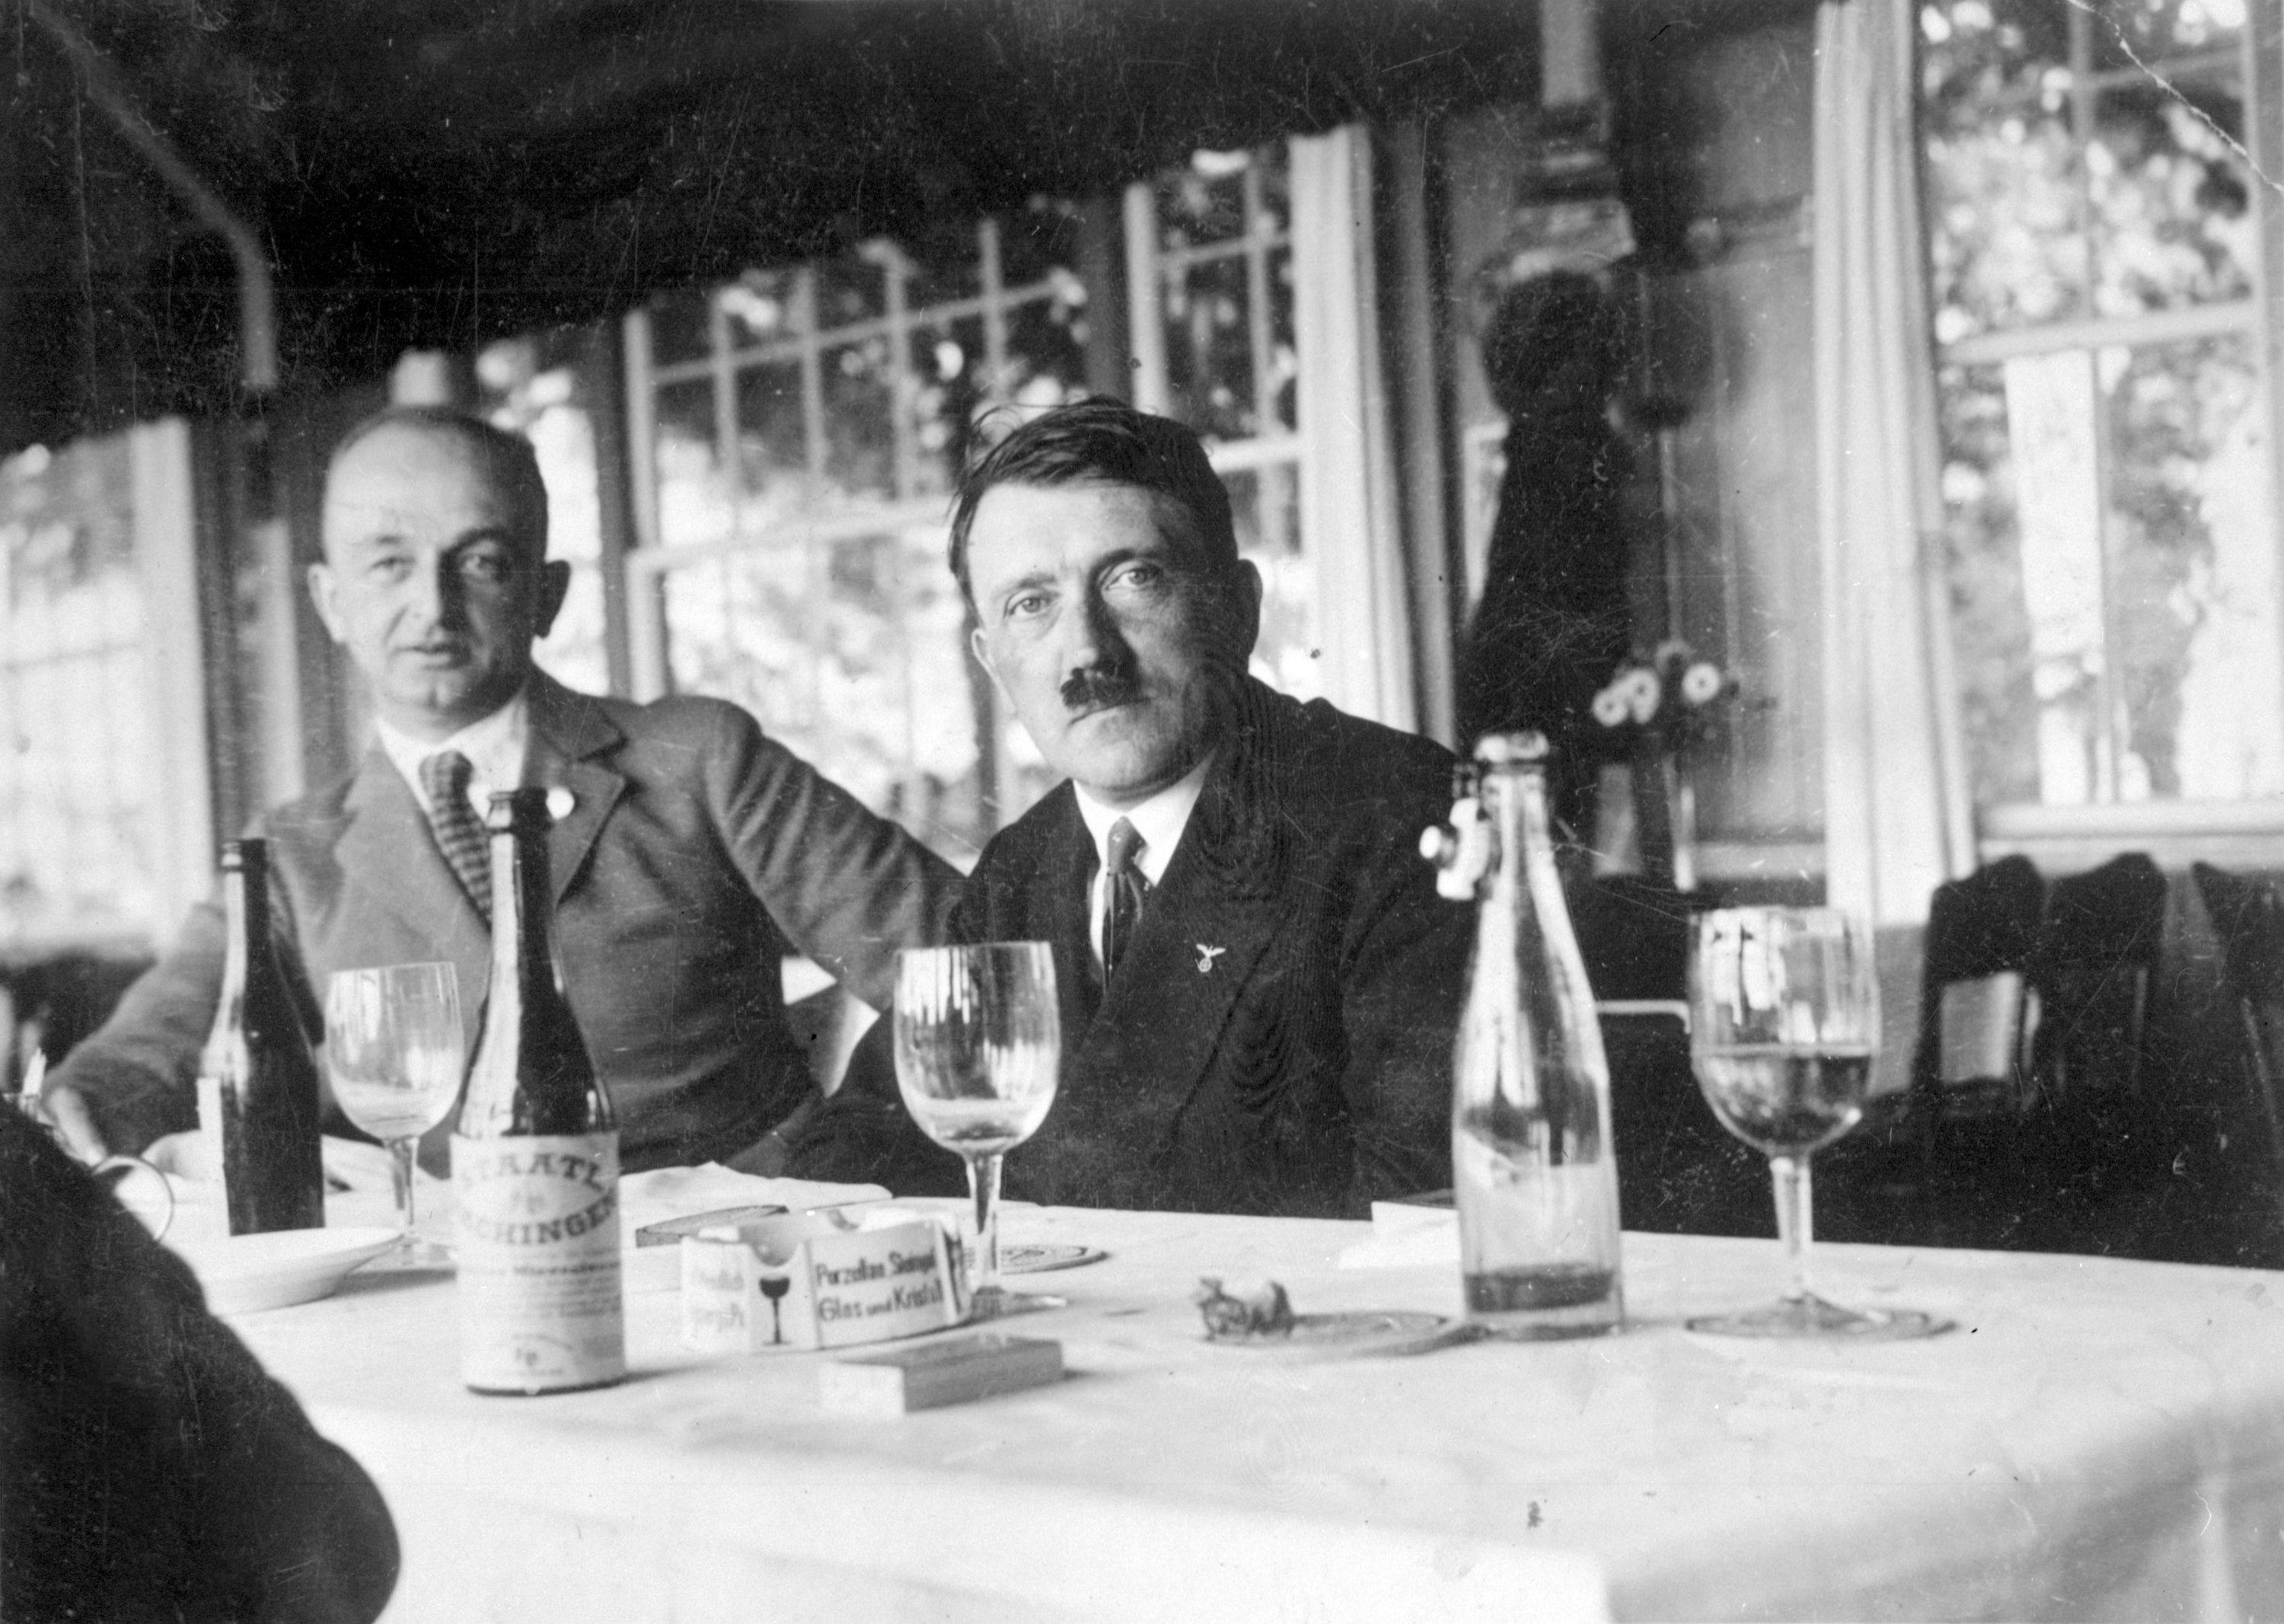 Adolf Hitler in the restaurant Osteria Bavaria in Munich, from Eva Braun's albums